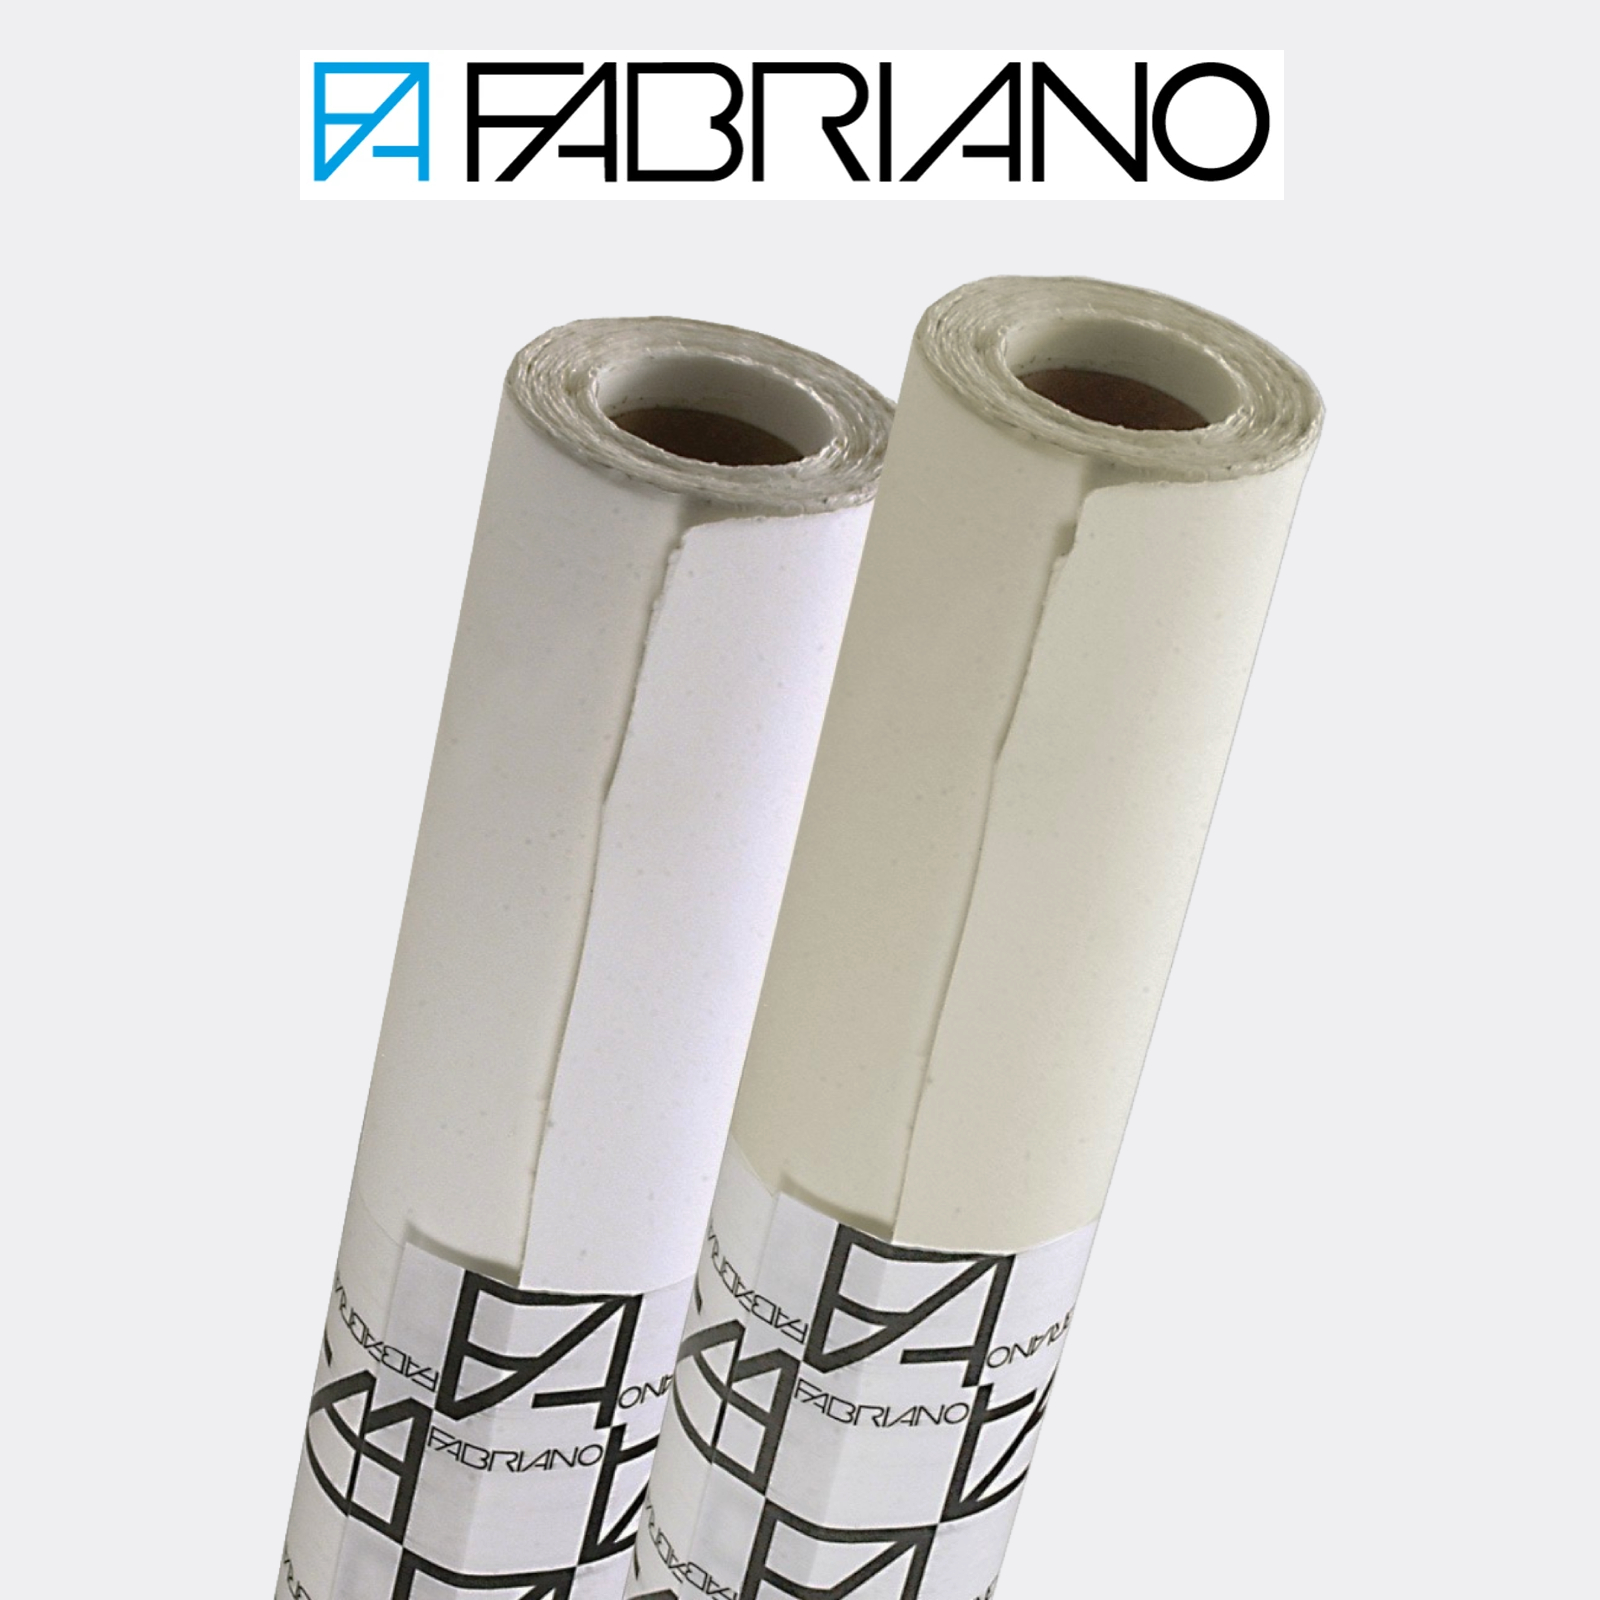 Carta Fabriano Artistico Traditional White in rotoli 1,40 x 10 mt